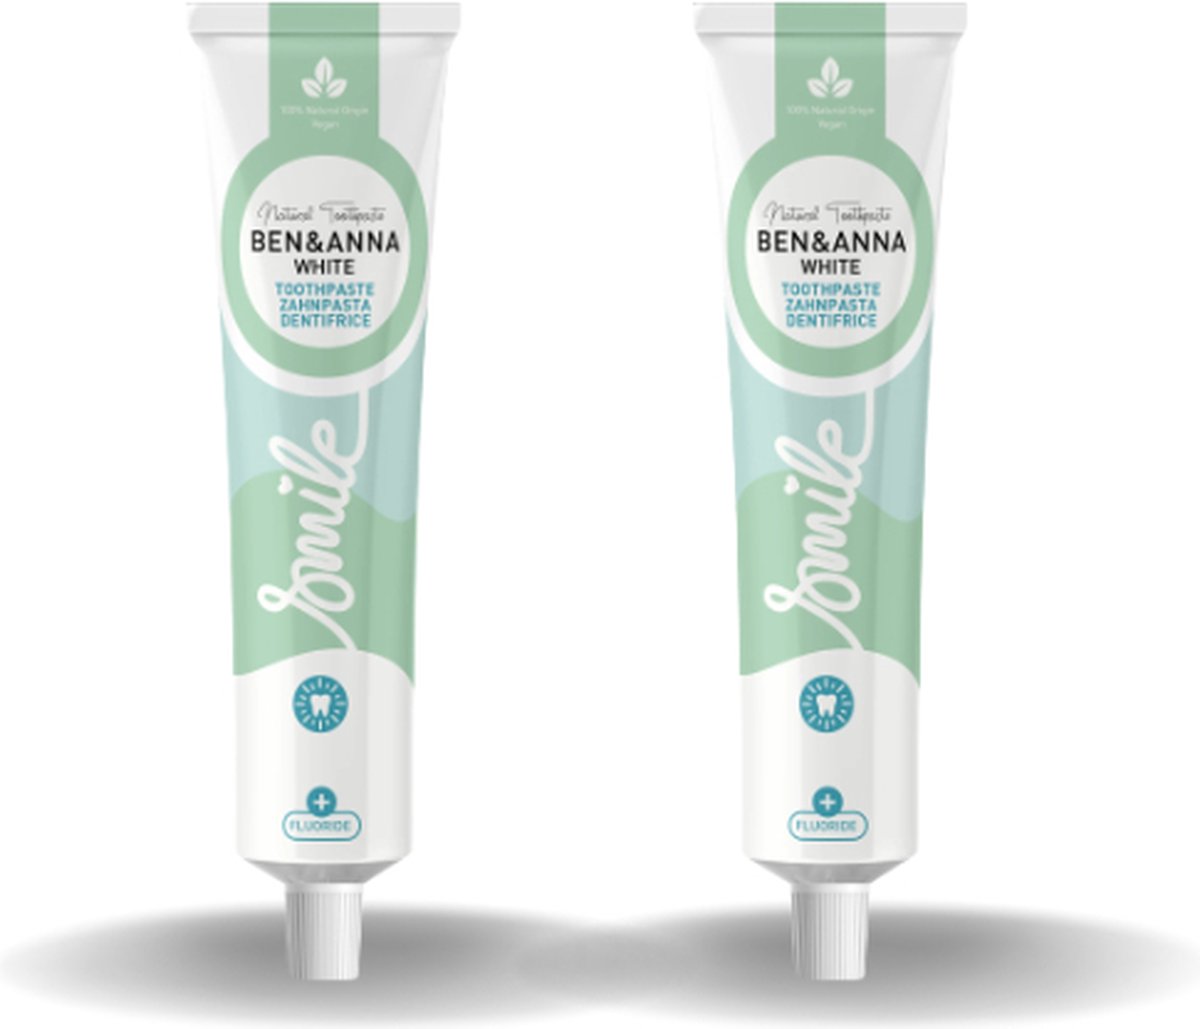 BEN&ANNA - Toothpaste Smile with Fluoride White - 75ml - 2 Pak